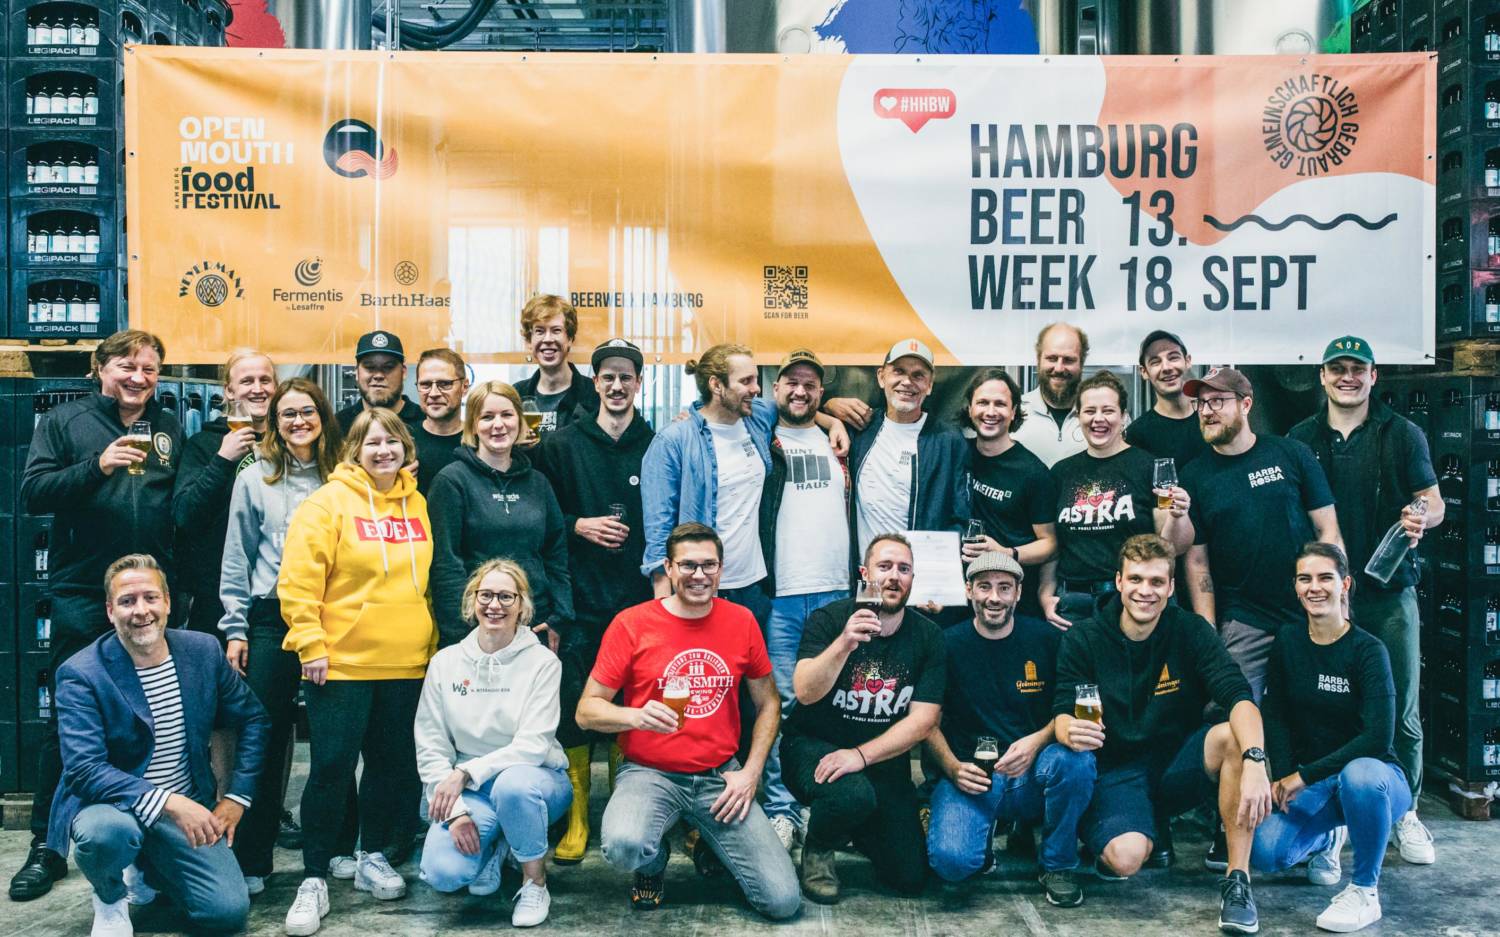 20 Brauereien haben gemeinschaftlich das Co-Brew „Hazy Hoppy Helles“ gebraut  / ©Daria Yanina